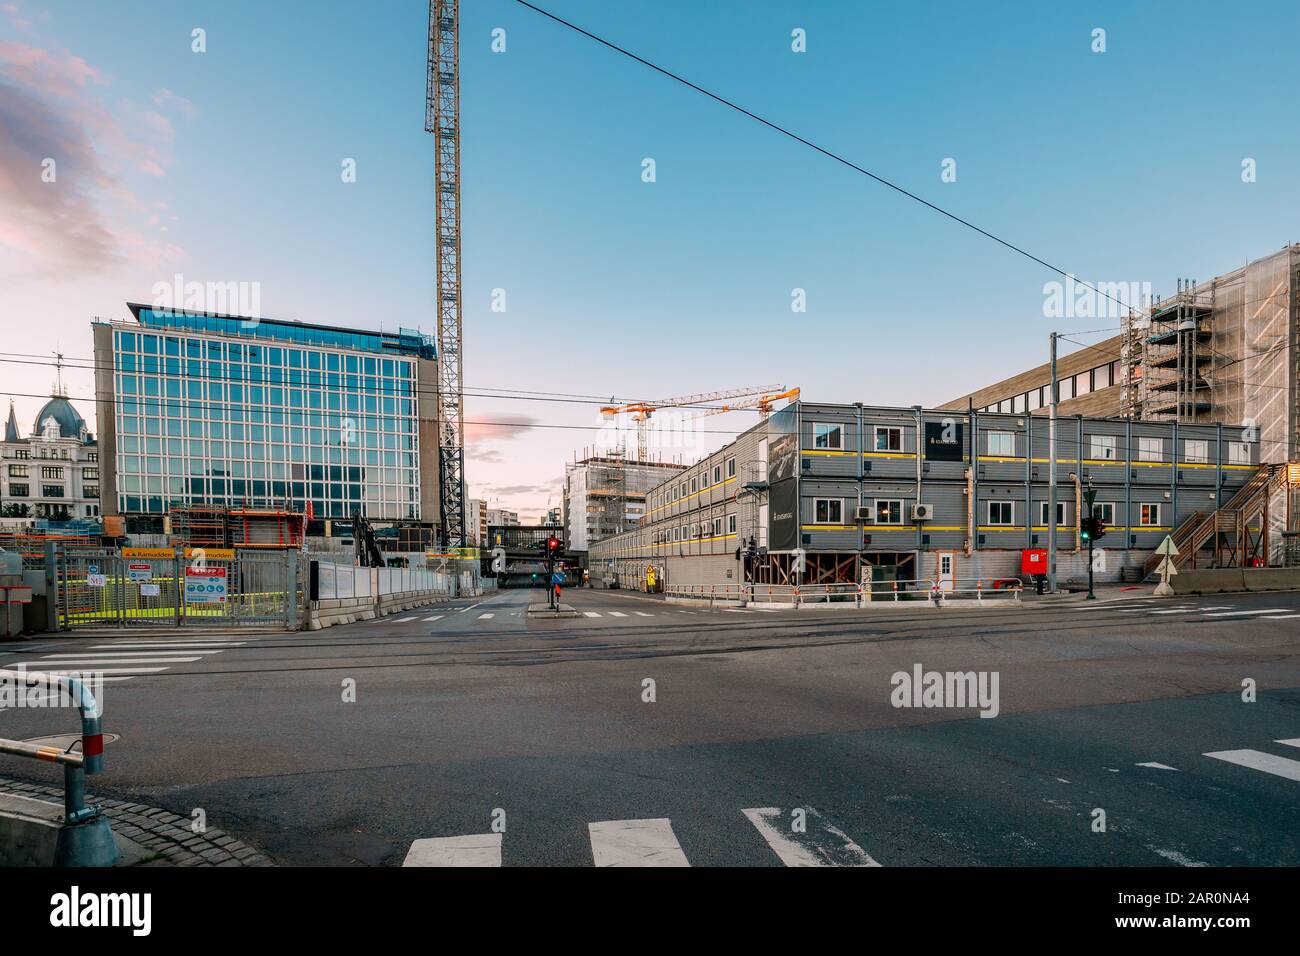 Oslo, Norwegen - 23. Juni 2019: Bauanhänger Sind Mobile Gebäude, Die Für Provisorische Büros, Essenseinrichtungen Und Die Lagerung Von Buil Genutzt Werden Stockfoto